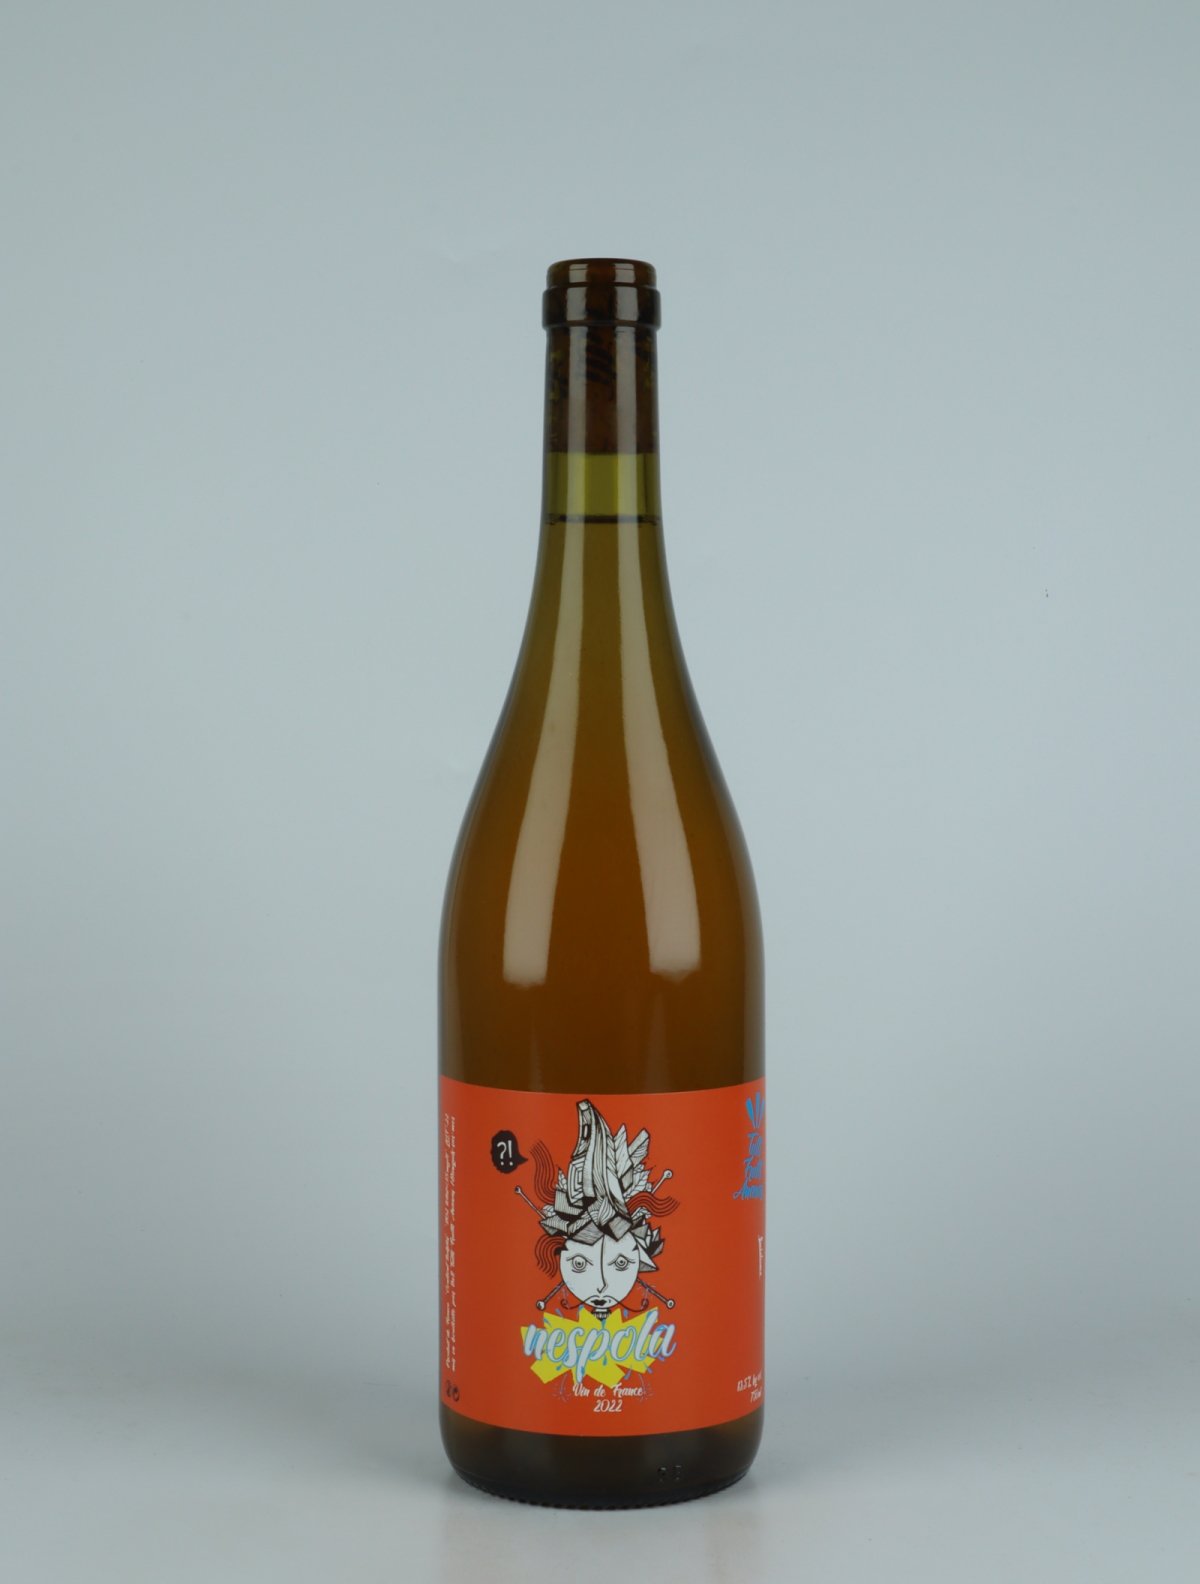 En flaske 2022 Nespola Hvidvin fra Tutti Frutti Ananas, Rousillon i Frankrig